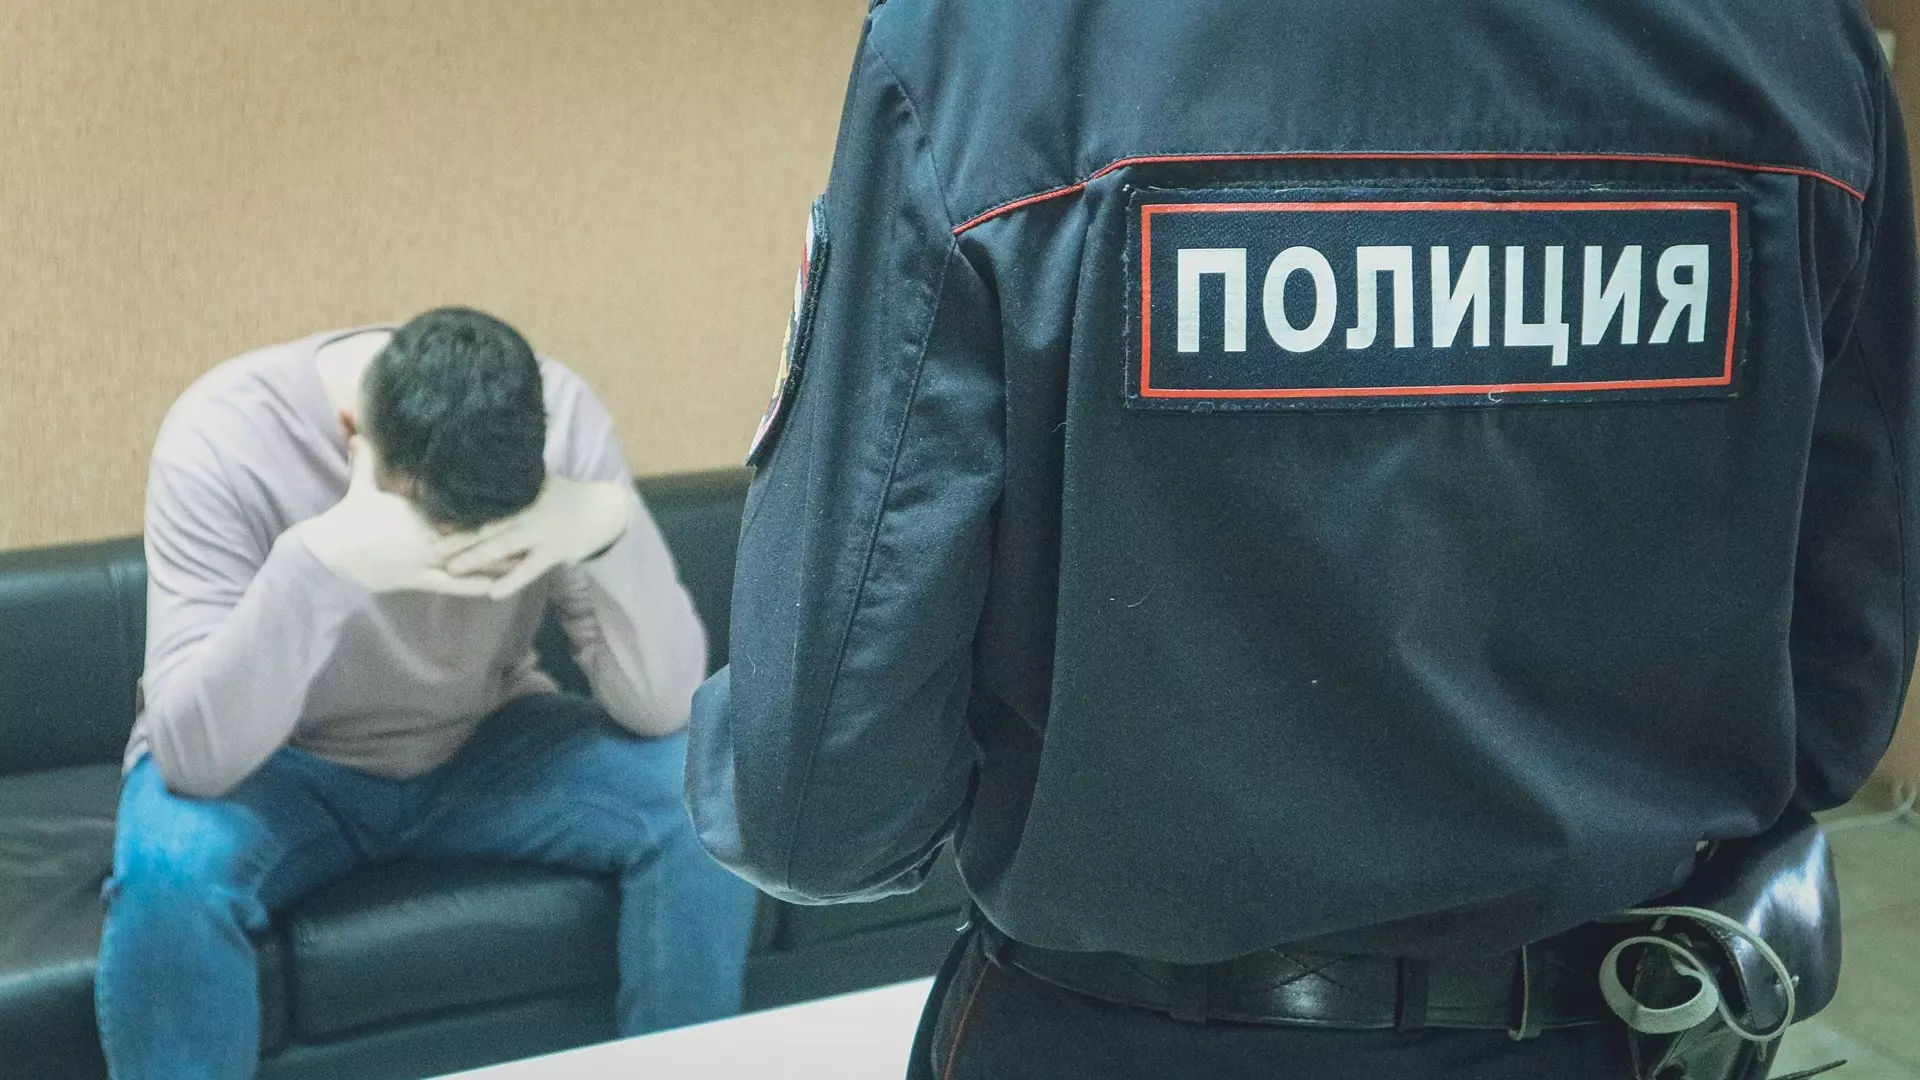 Юрист заявил, что расстрелявшему авто россиянину грозит 20 лет лишения свободы